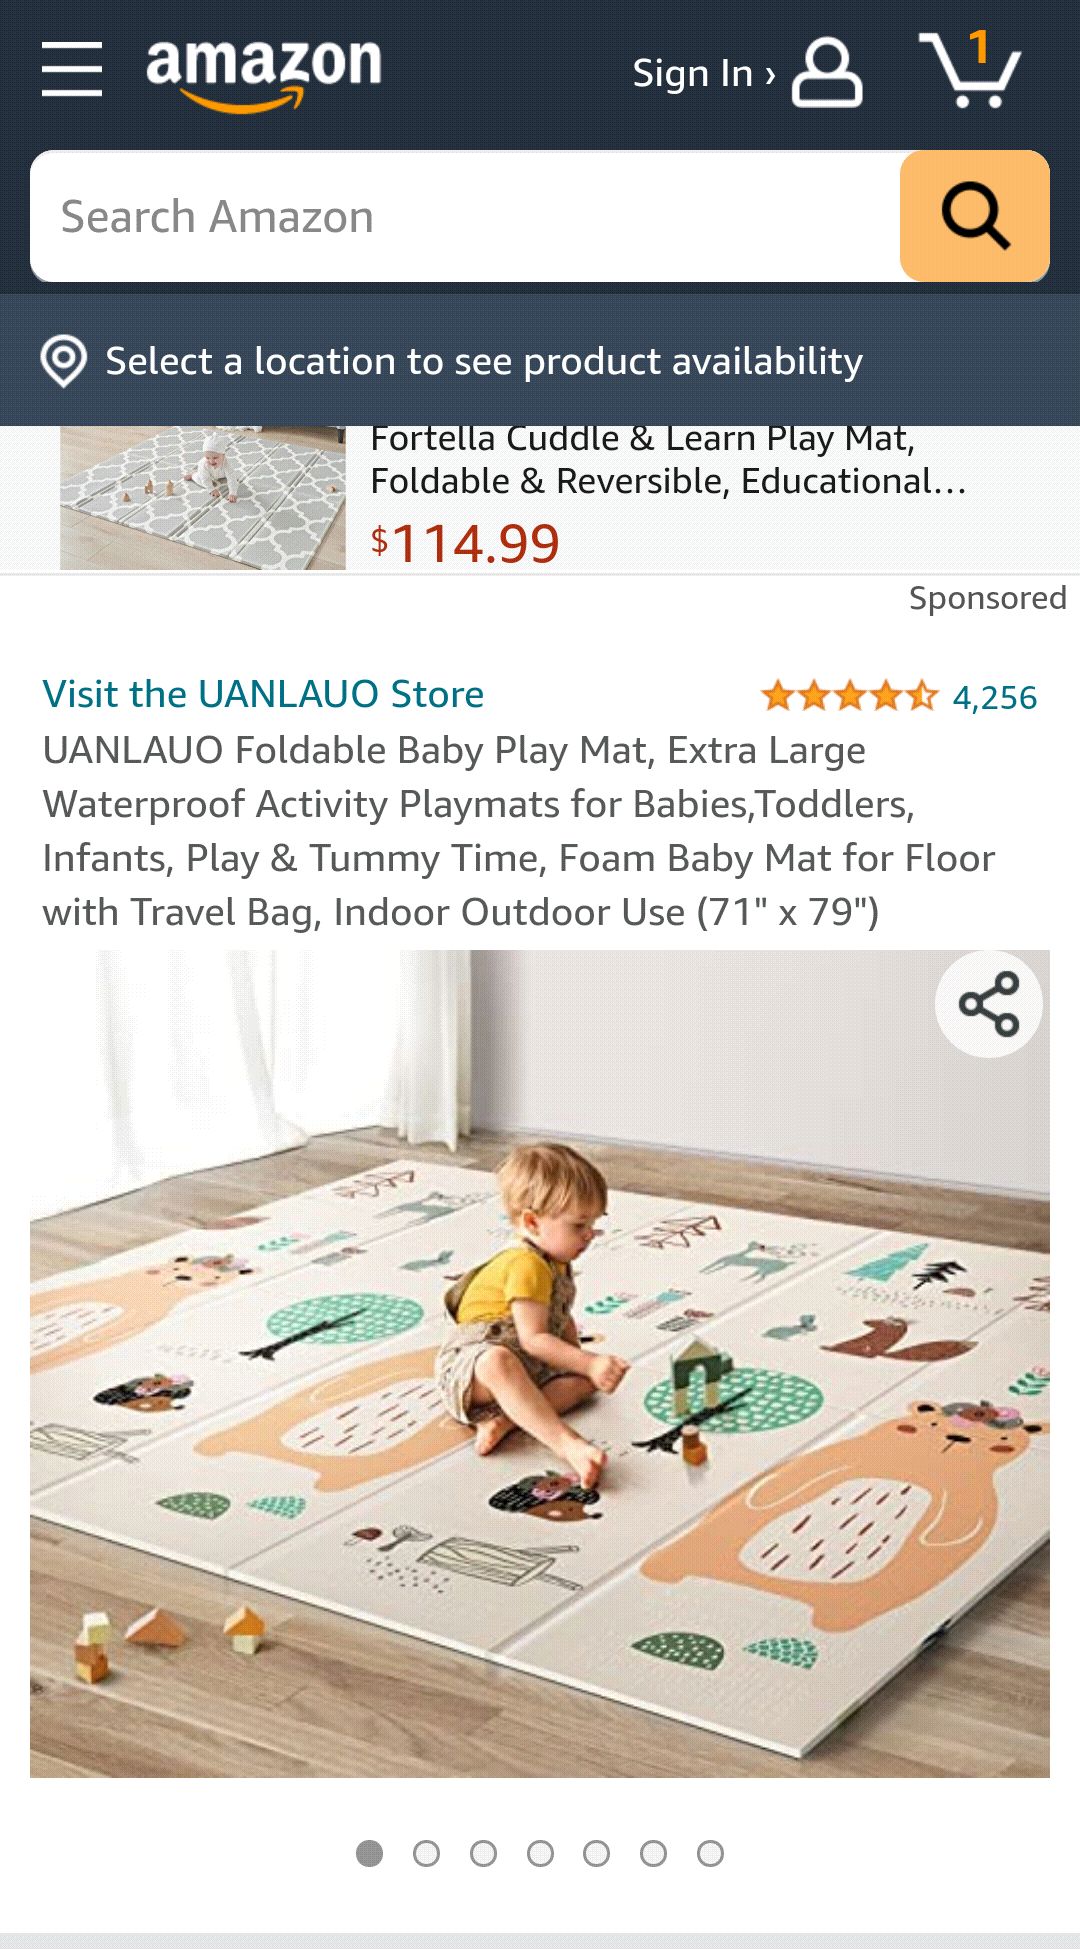 超大尺寸游戏垫 UANLAUO Foldable Baby Play Mat, Extra Large Waterproof Activity Playmats for Babies,Toddlers, Infants, Play & Tummy Time (71" x 79") : Baby